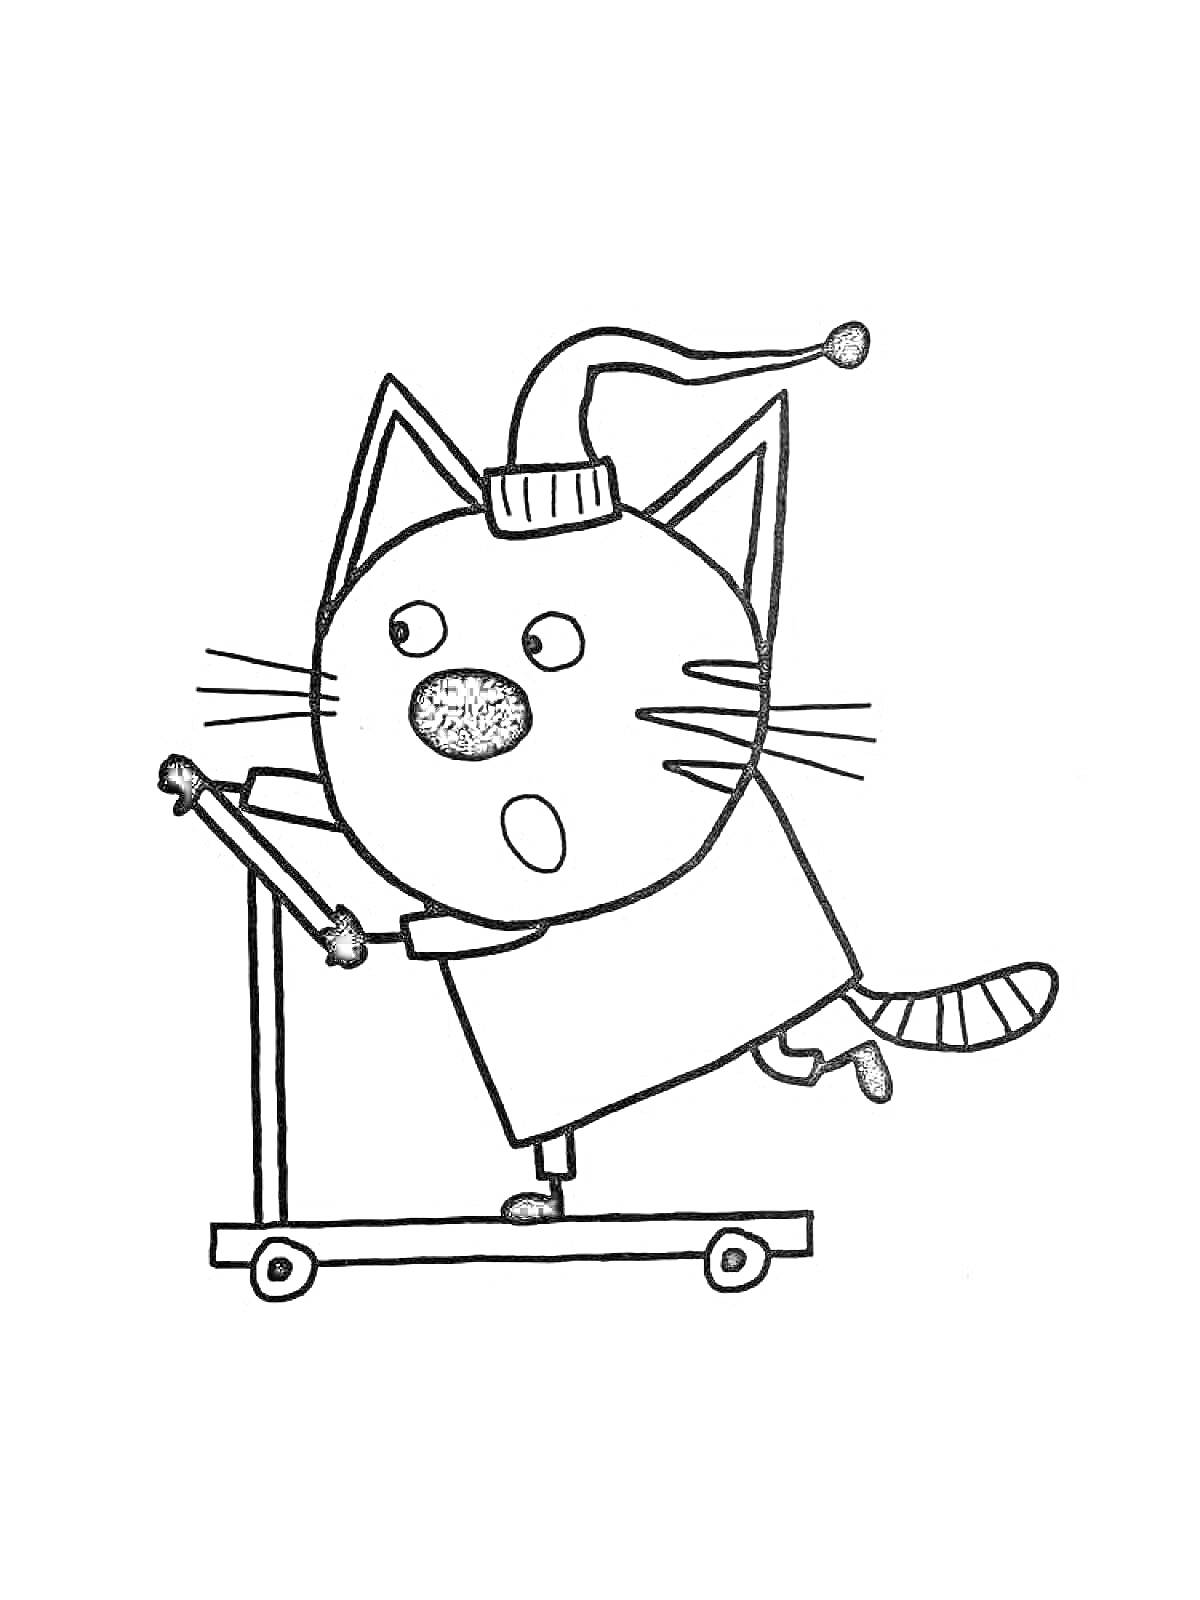 Раскраска Кот в шапке на самокате